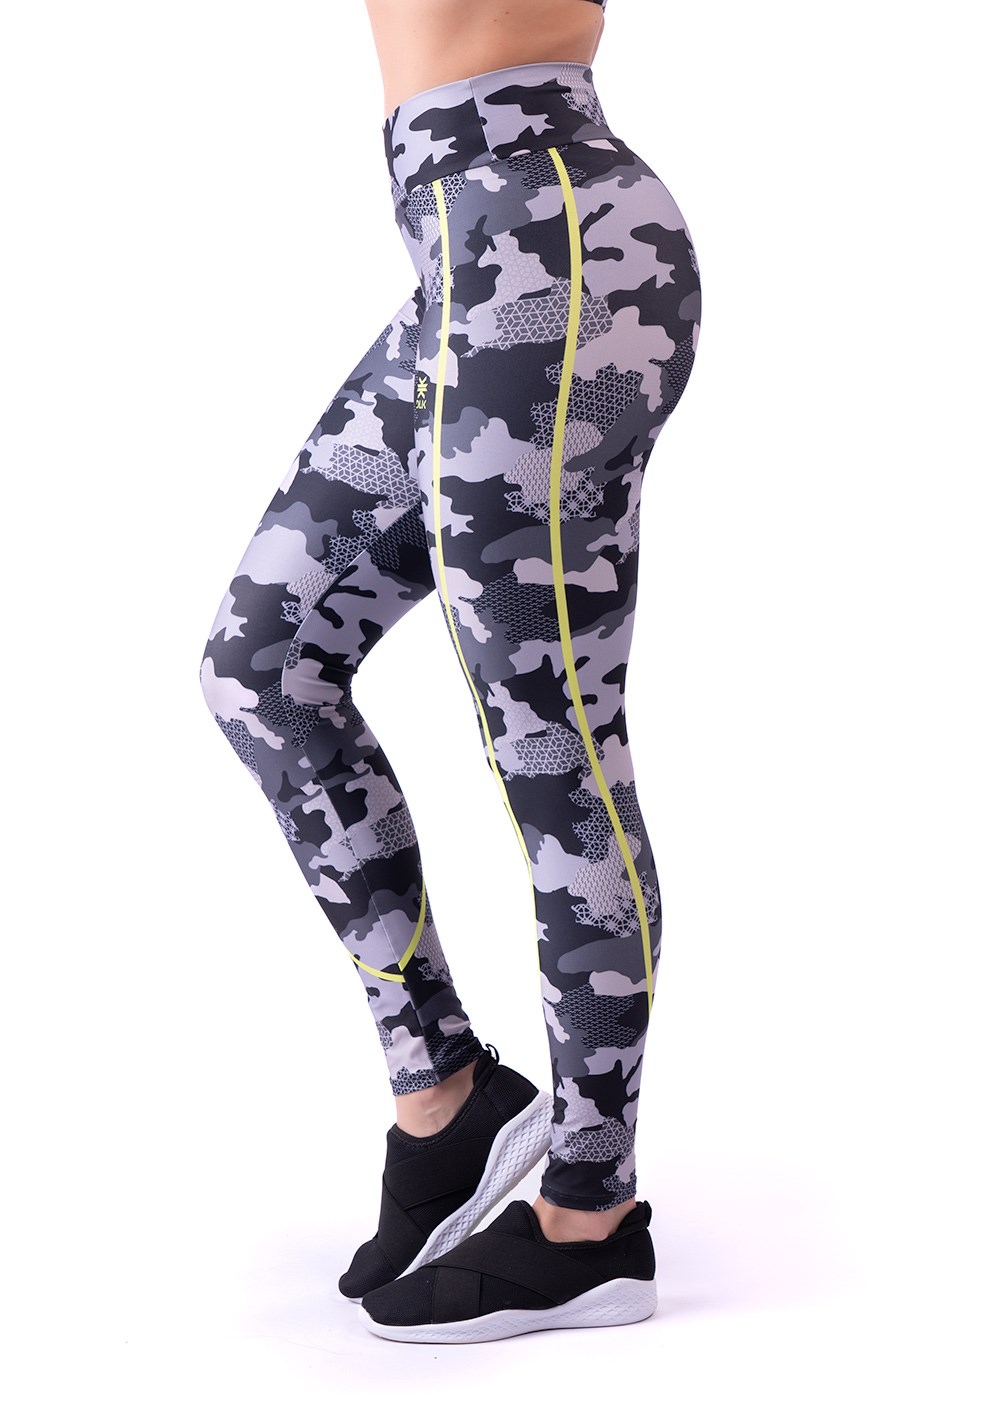 Legging fitness feminina new printed estampada camuflado cinza